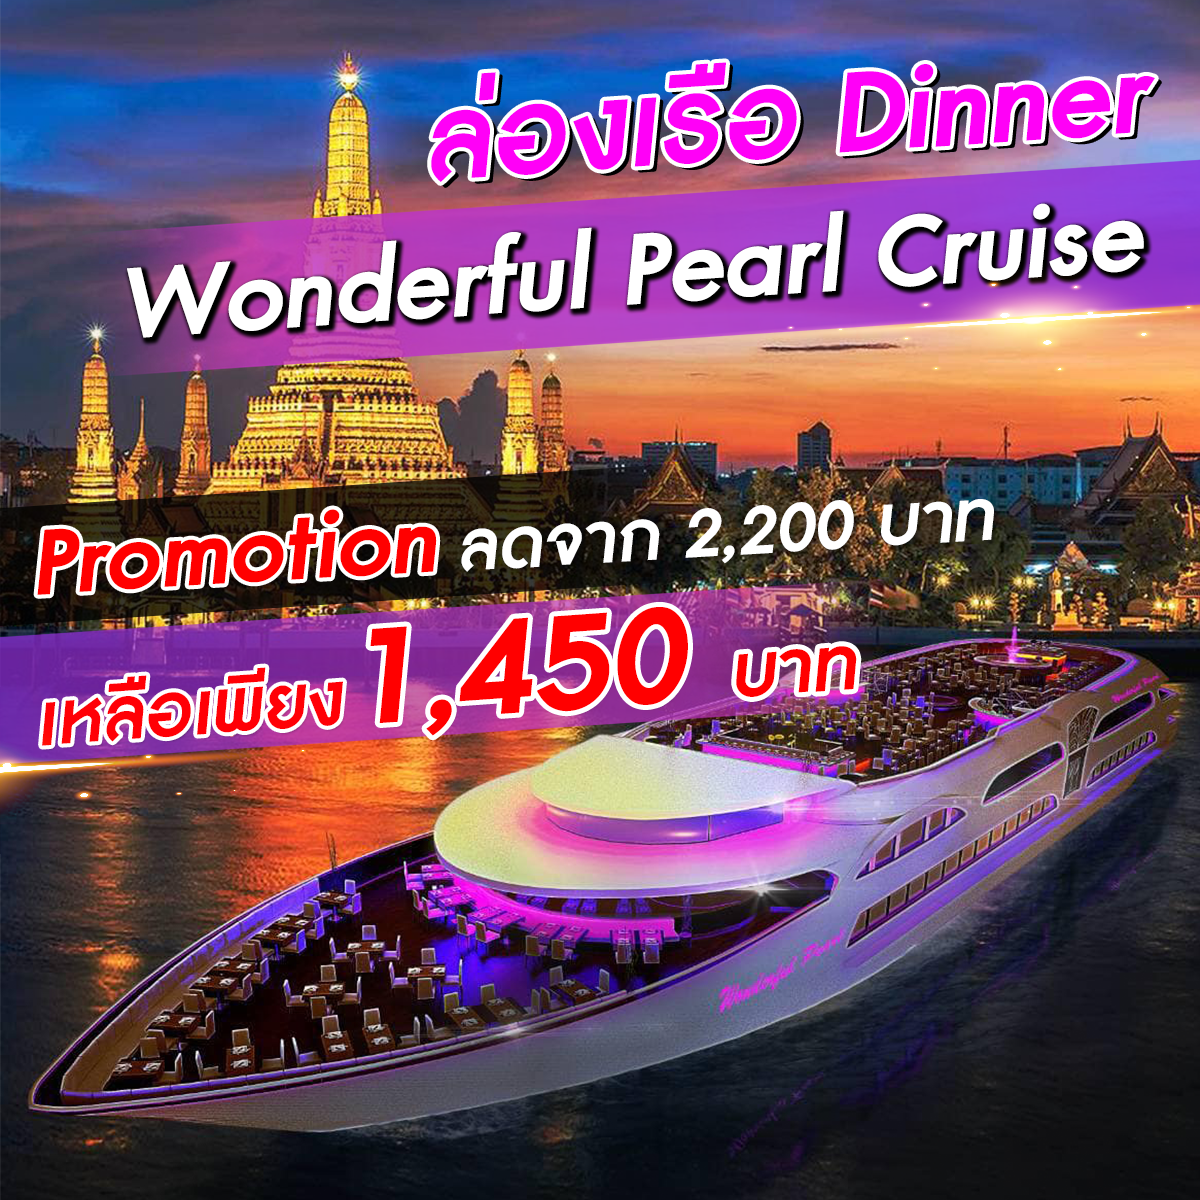 เรือ Wonderful Pearl Cruise